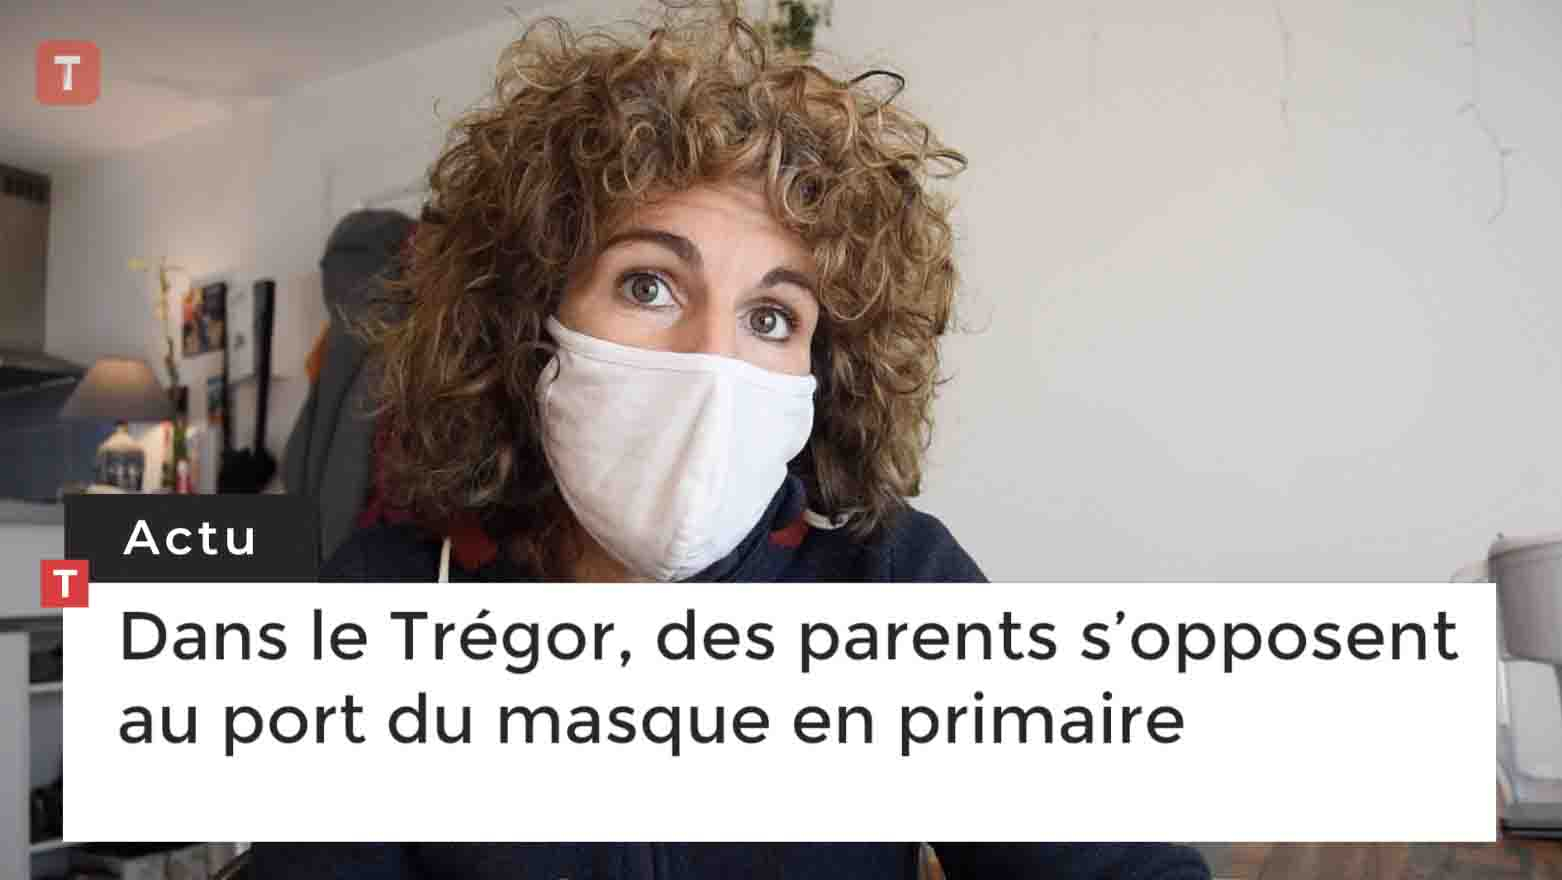 Dans le Trégor, des parents s’opposent au port du masque en primaire (Le Télégramme)